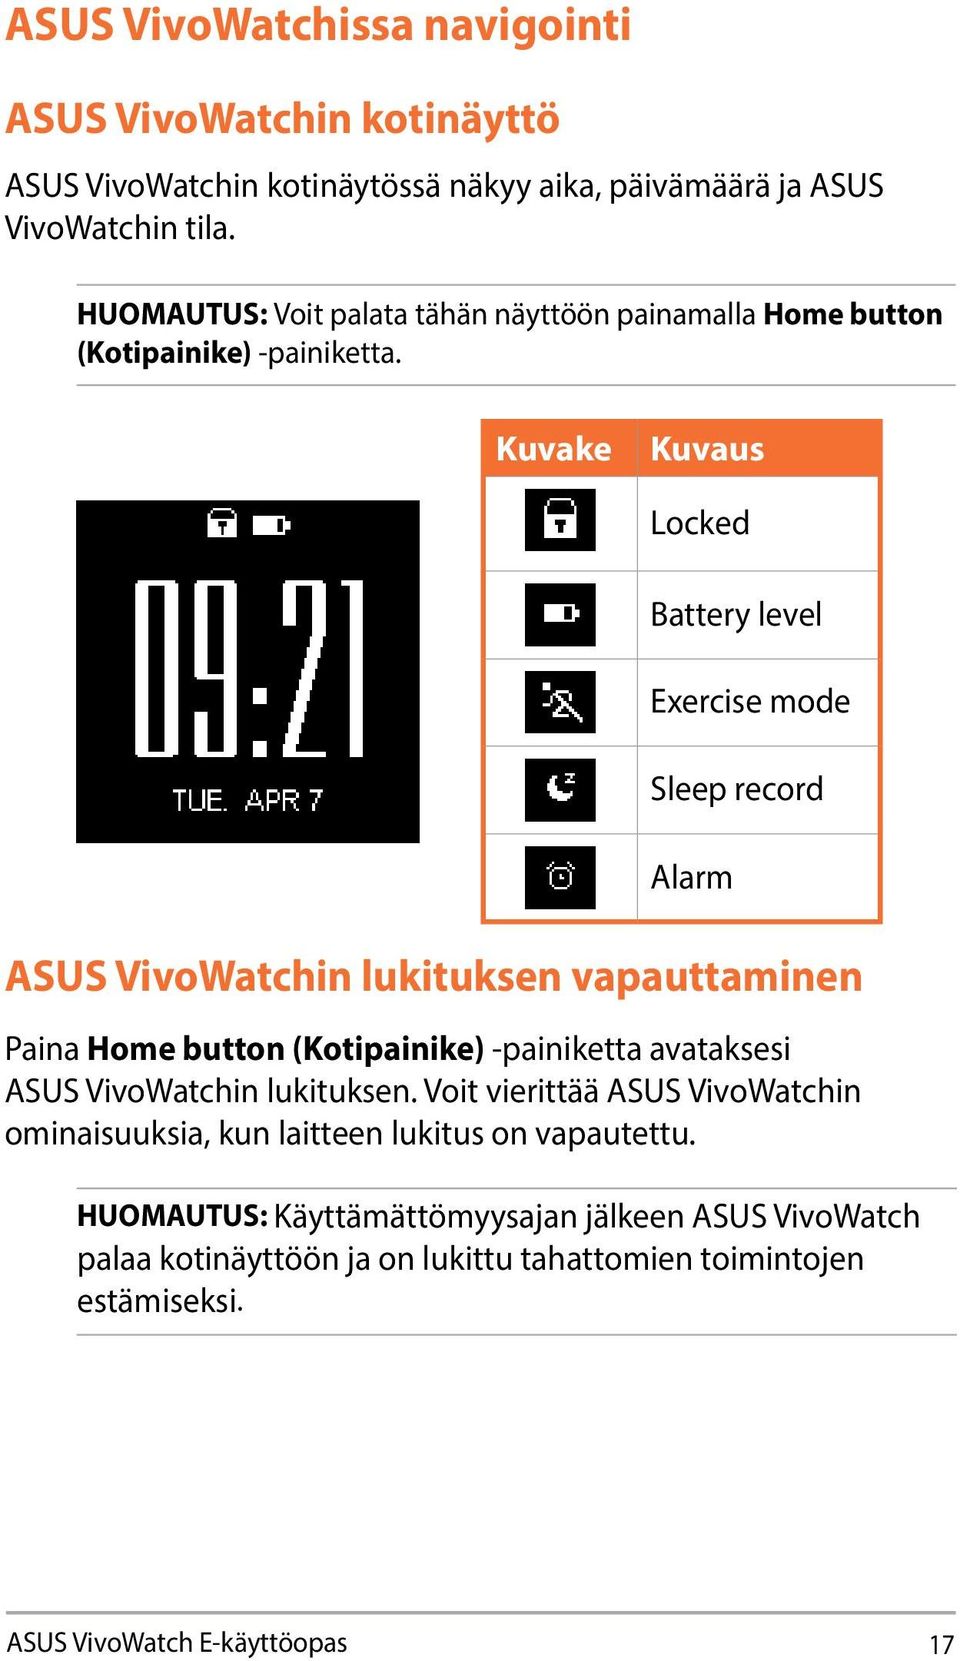 Kuvake Kuvaus Locked Battery level Exercise mode Sleep record Alarm ASUS VivoWatchin lukituksen vapauttaminen Paina Home button (Kotipainike) -painiketta